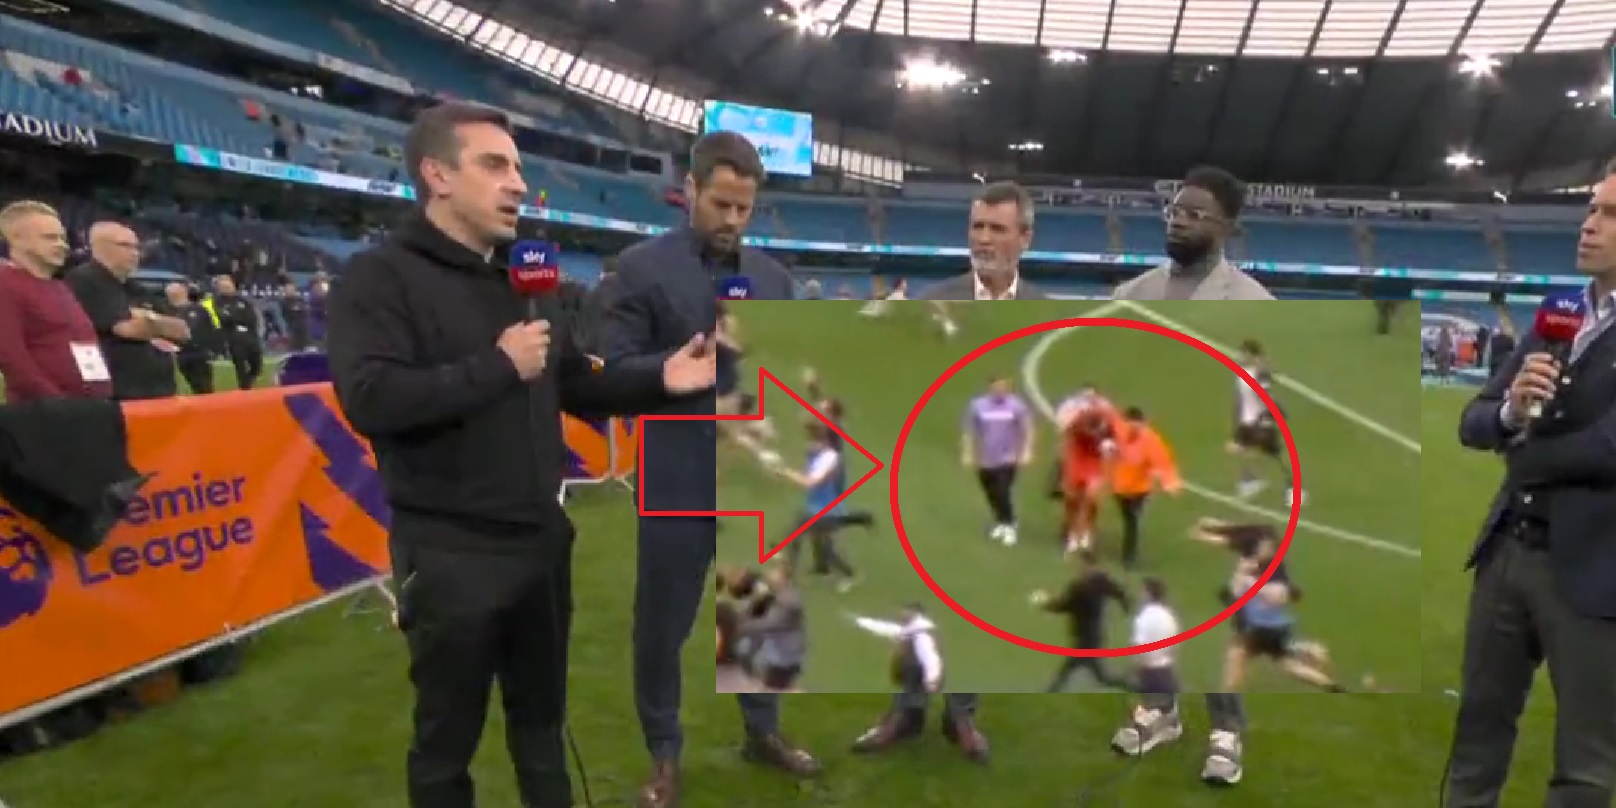 (Video) ‘Idiots’ – Neville furious after footage shows Man City fans assaulting Aston Villa goalkeeper